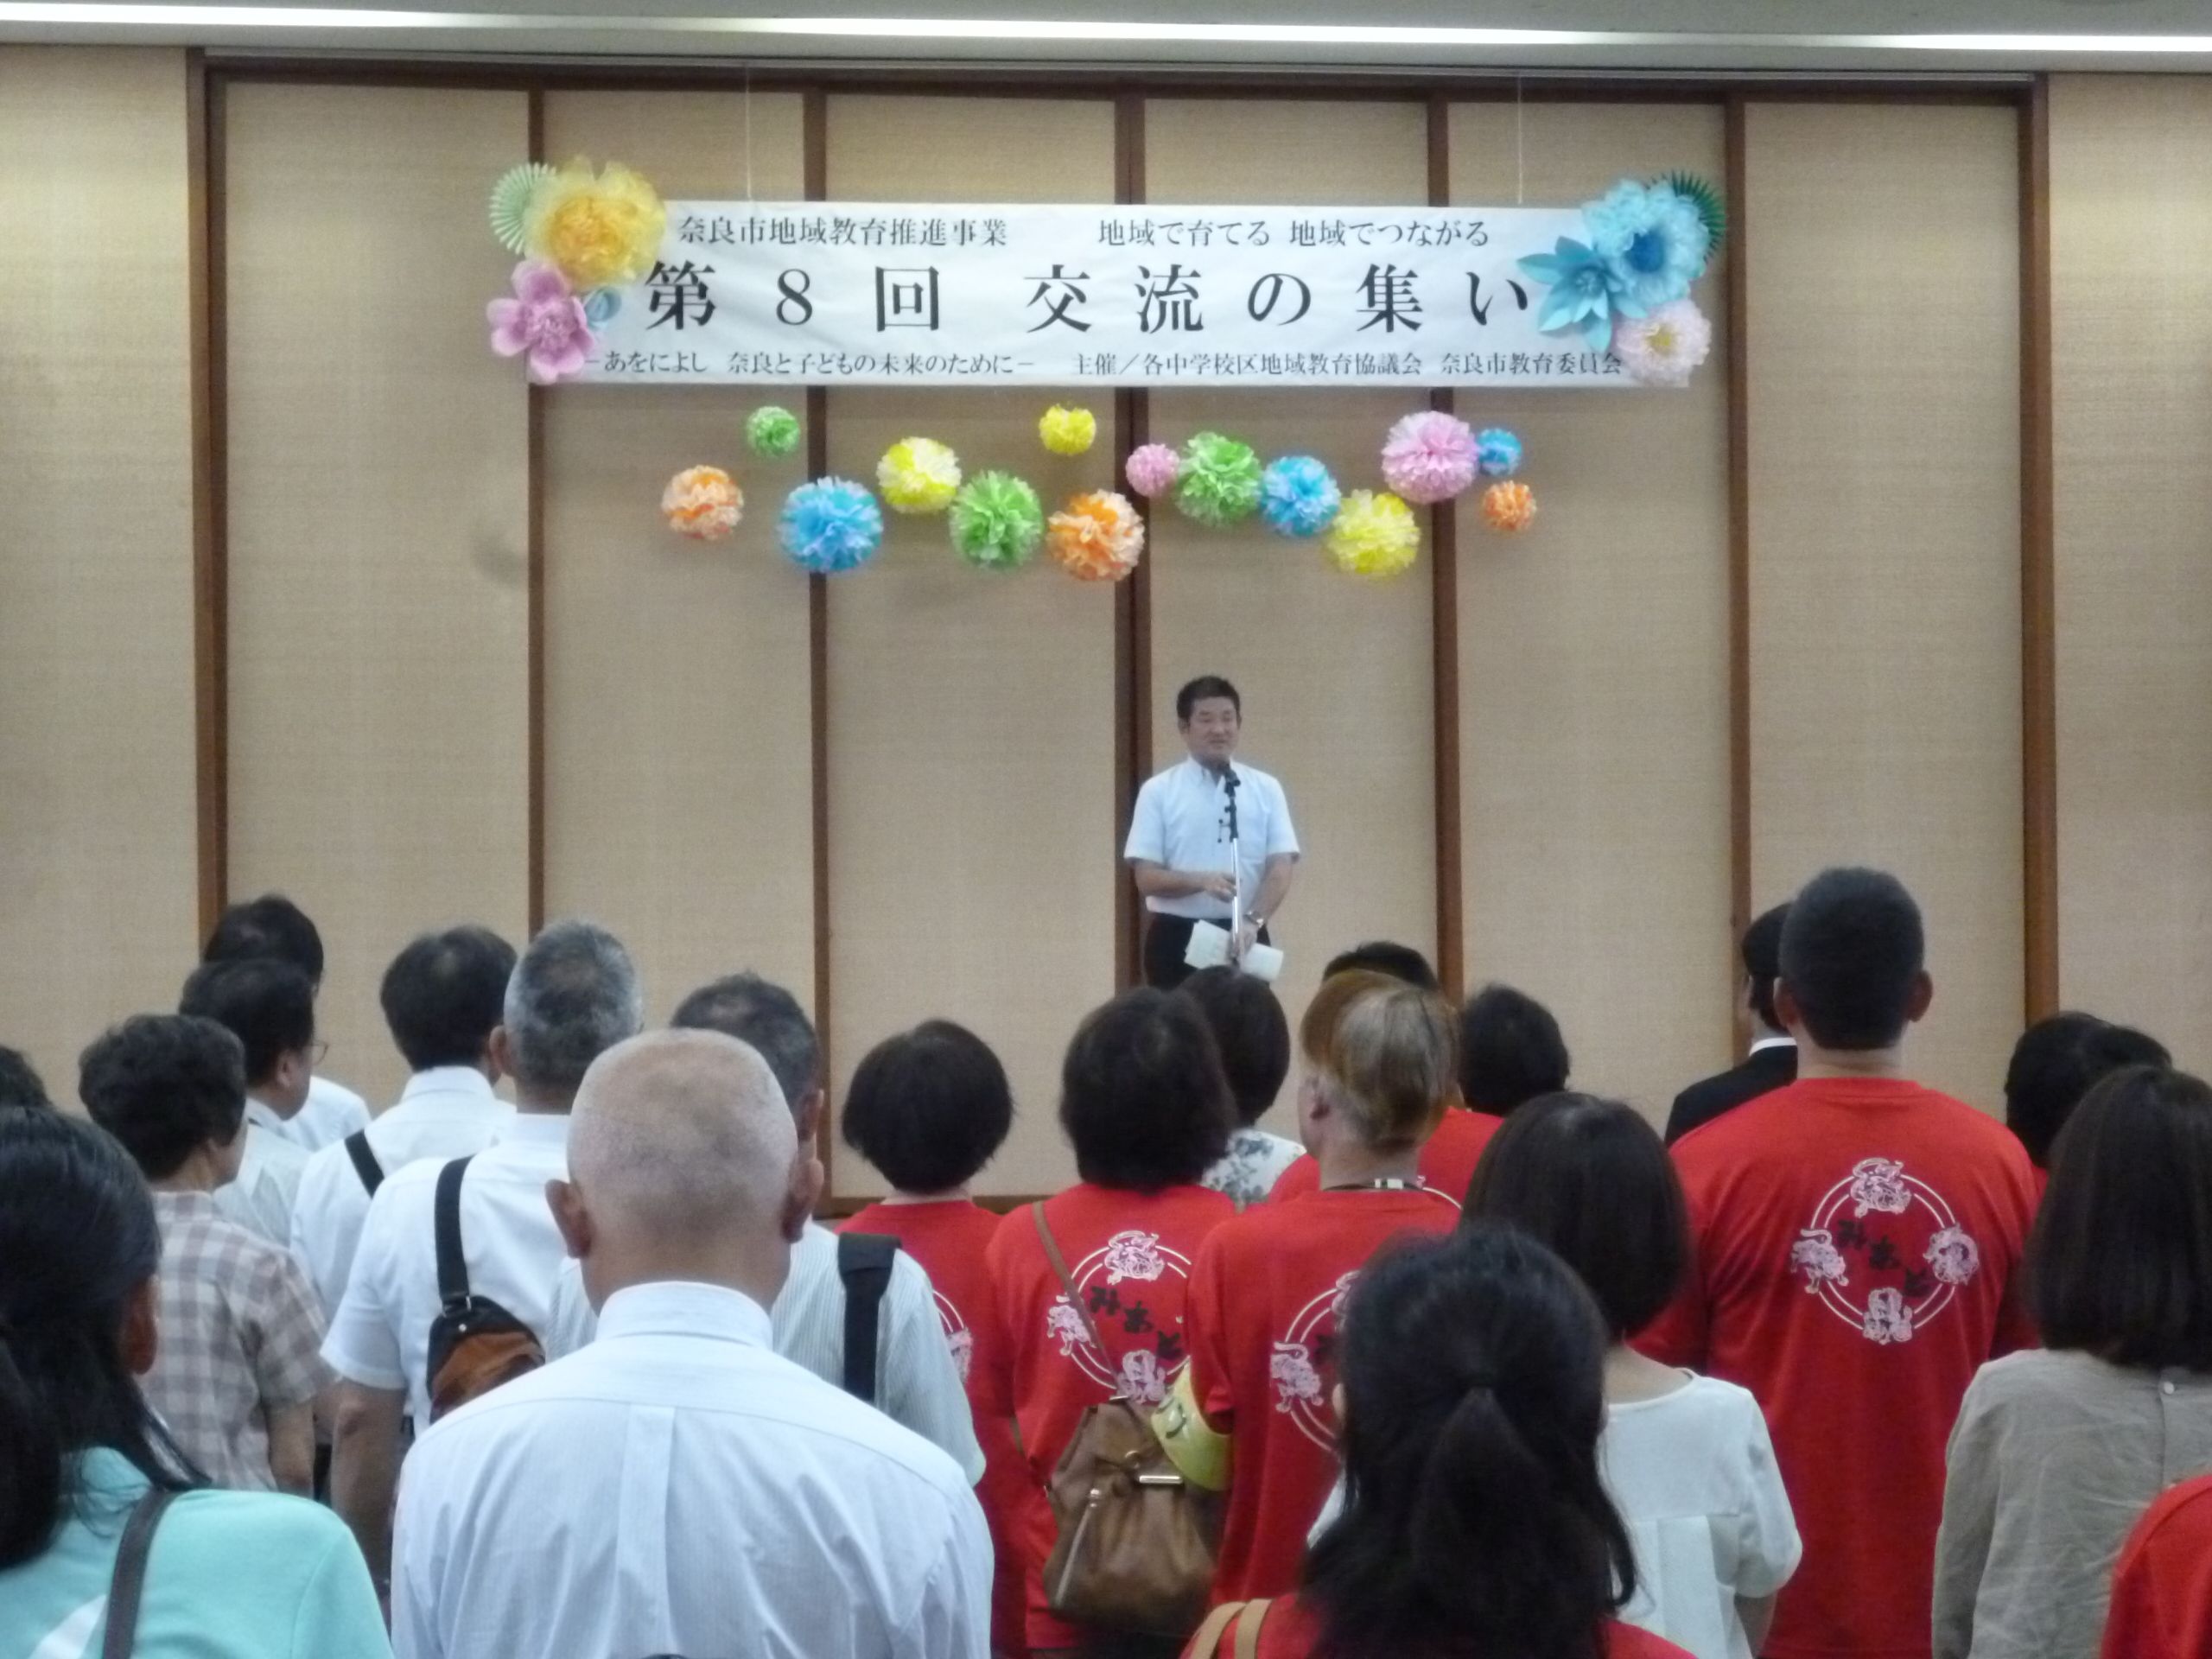 奈良市地域教育推進事業 第8回「交流の集い」が開催されました!の画像1